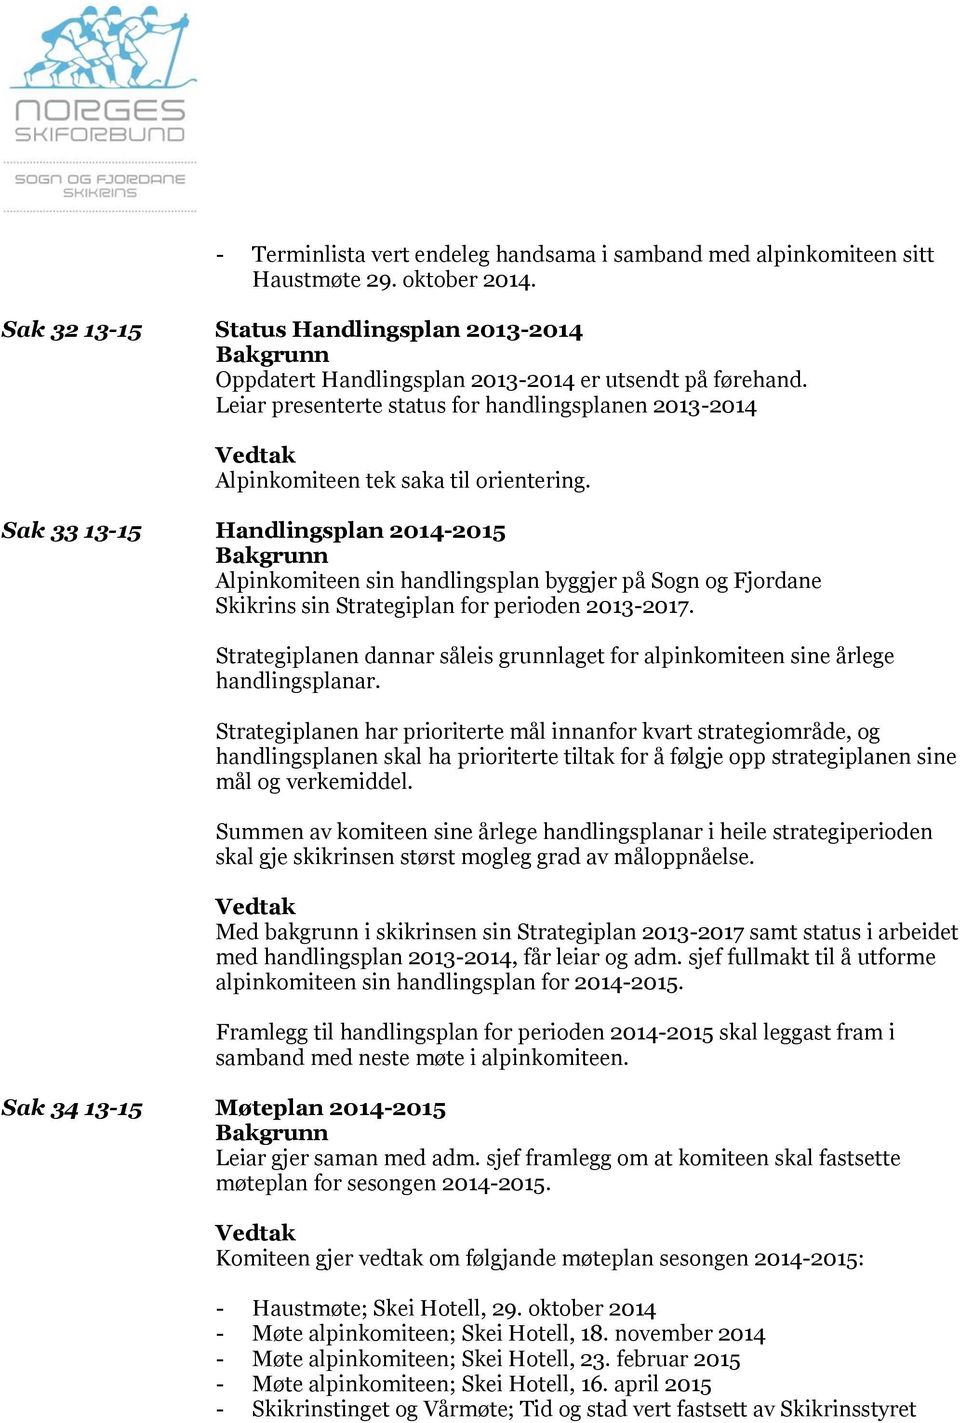 Sak 33 13-15 Handlingsplan 2014-2015 Alpinkomiteen sin handlingsplan byggjer på Sogn og Fjordane Skikrins sin Strategiplan for perioden 2013-2017.